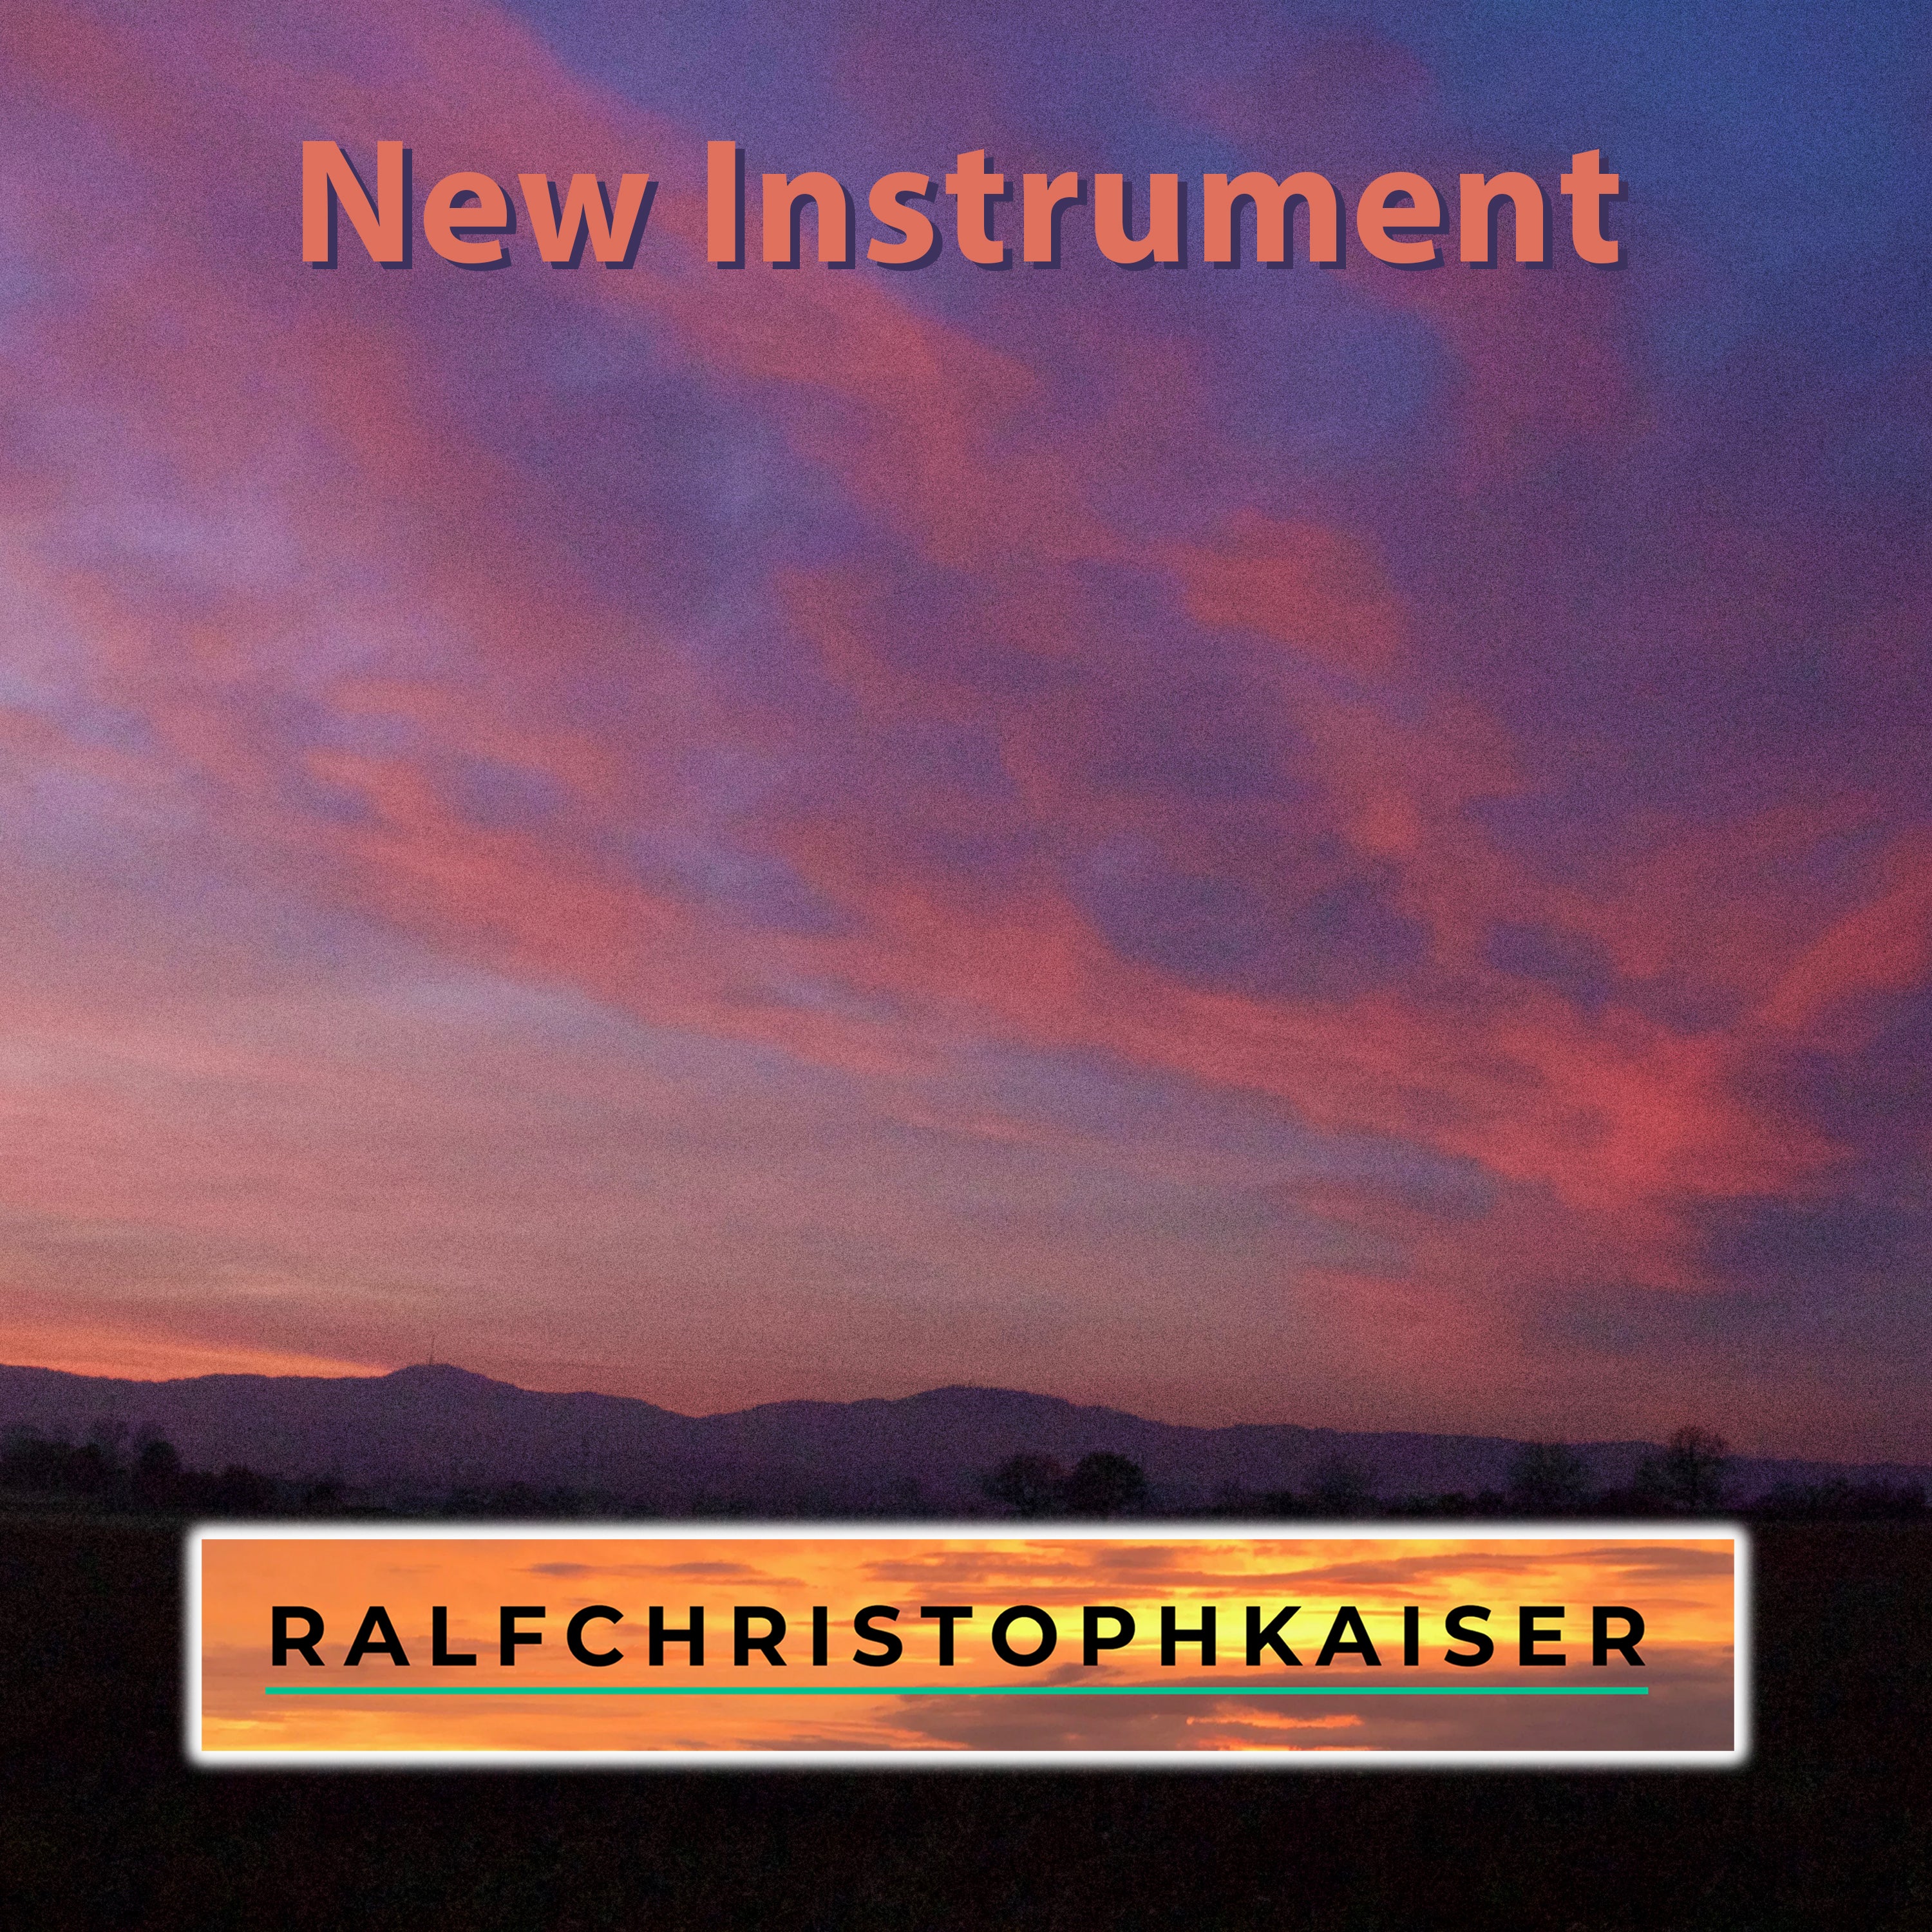 New Instrument by RalfChristophKaiser.com in Ultra HD Sound Quality - ralfchristophkaiser.com Musik und Noten